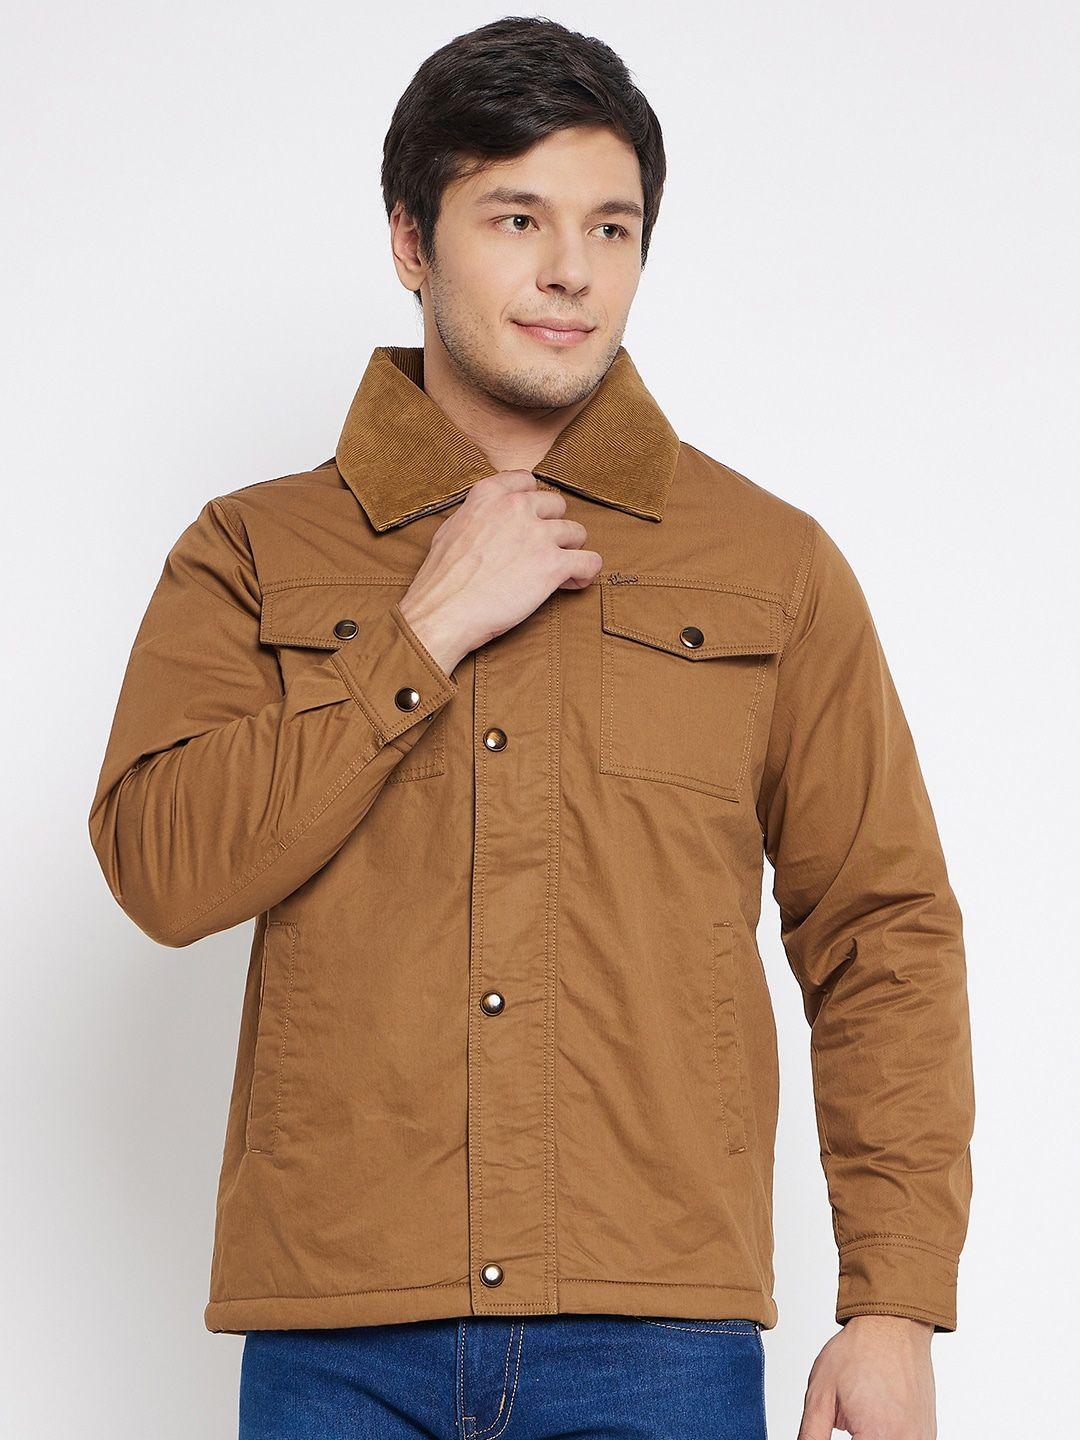 okane spread collar lightweight cotton tailored jacket